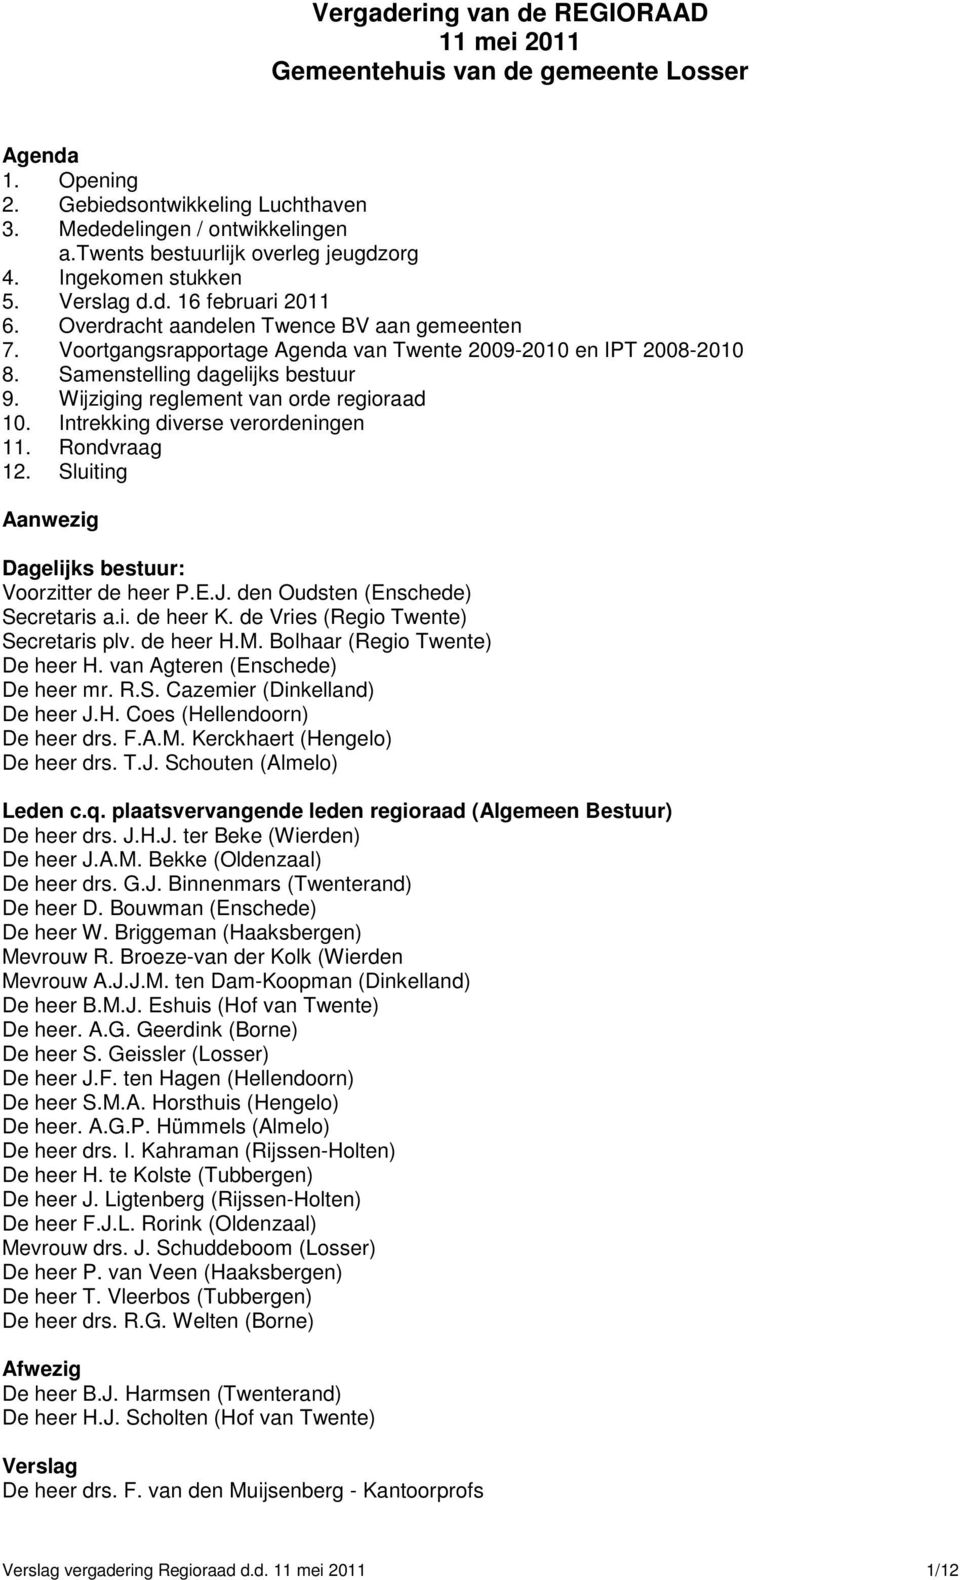 Voortgangsrapportage Agenda van Twente 2009-2010 en IPT 2008-2010 8. Samenstelling dagelijks bestuur 9. Wijziging reglement van orde regioraad 10. Intrekking diverse verordeningen 11. Rondvraag 12.